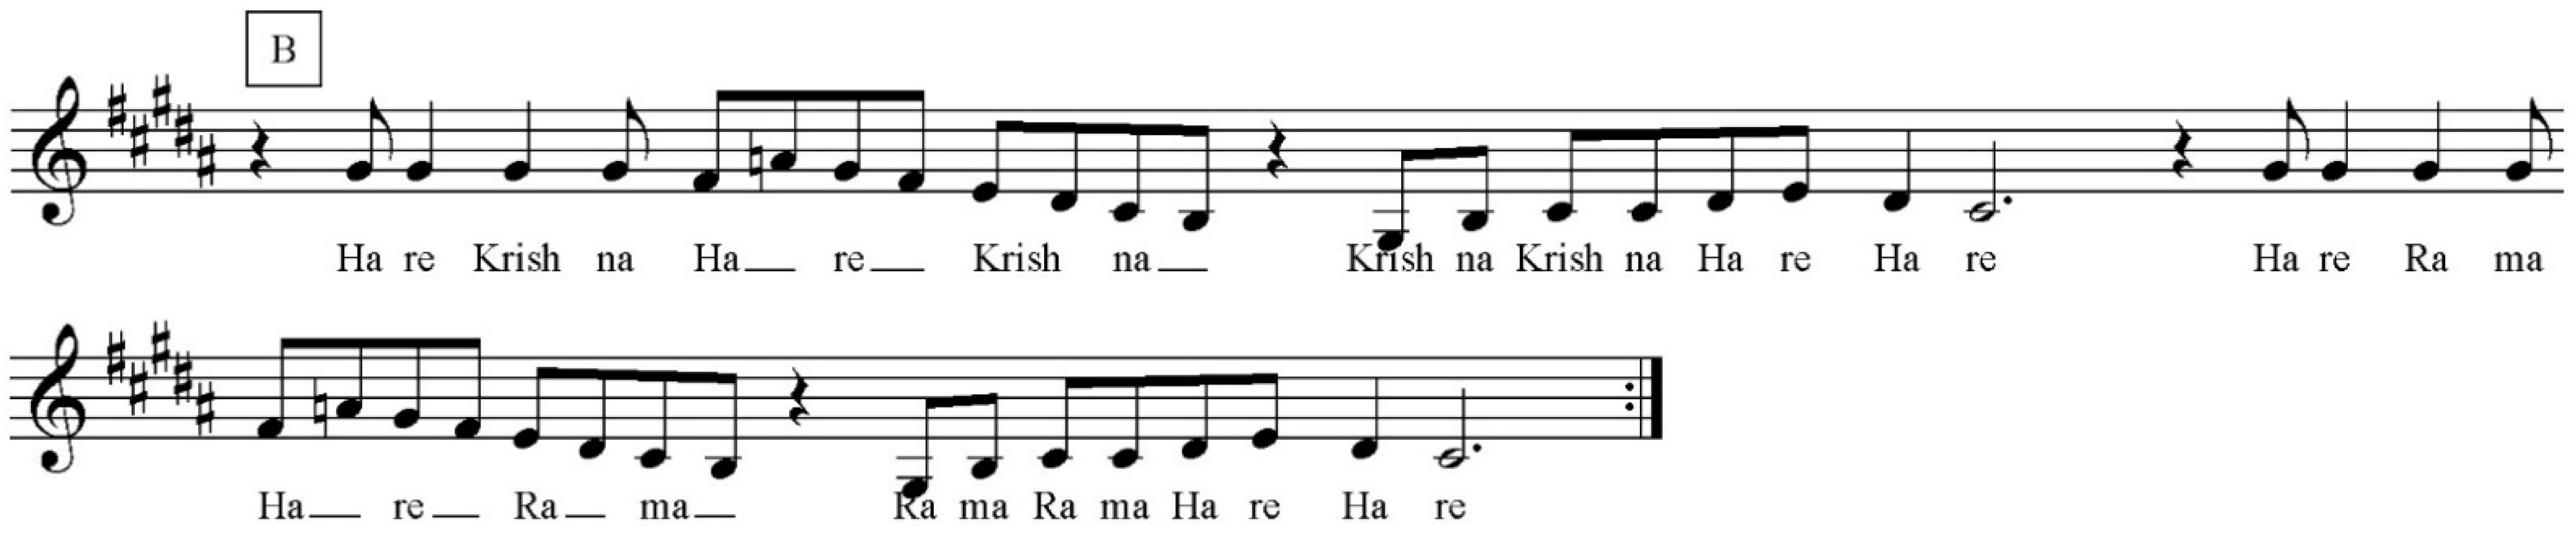 Hare Krishna Hare Rama ISKCON Original Maha Mantra - Piano